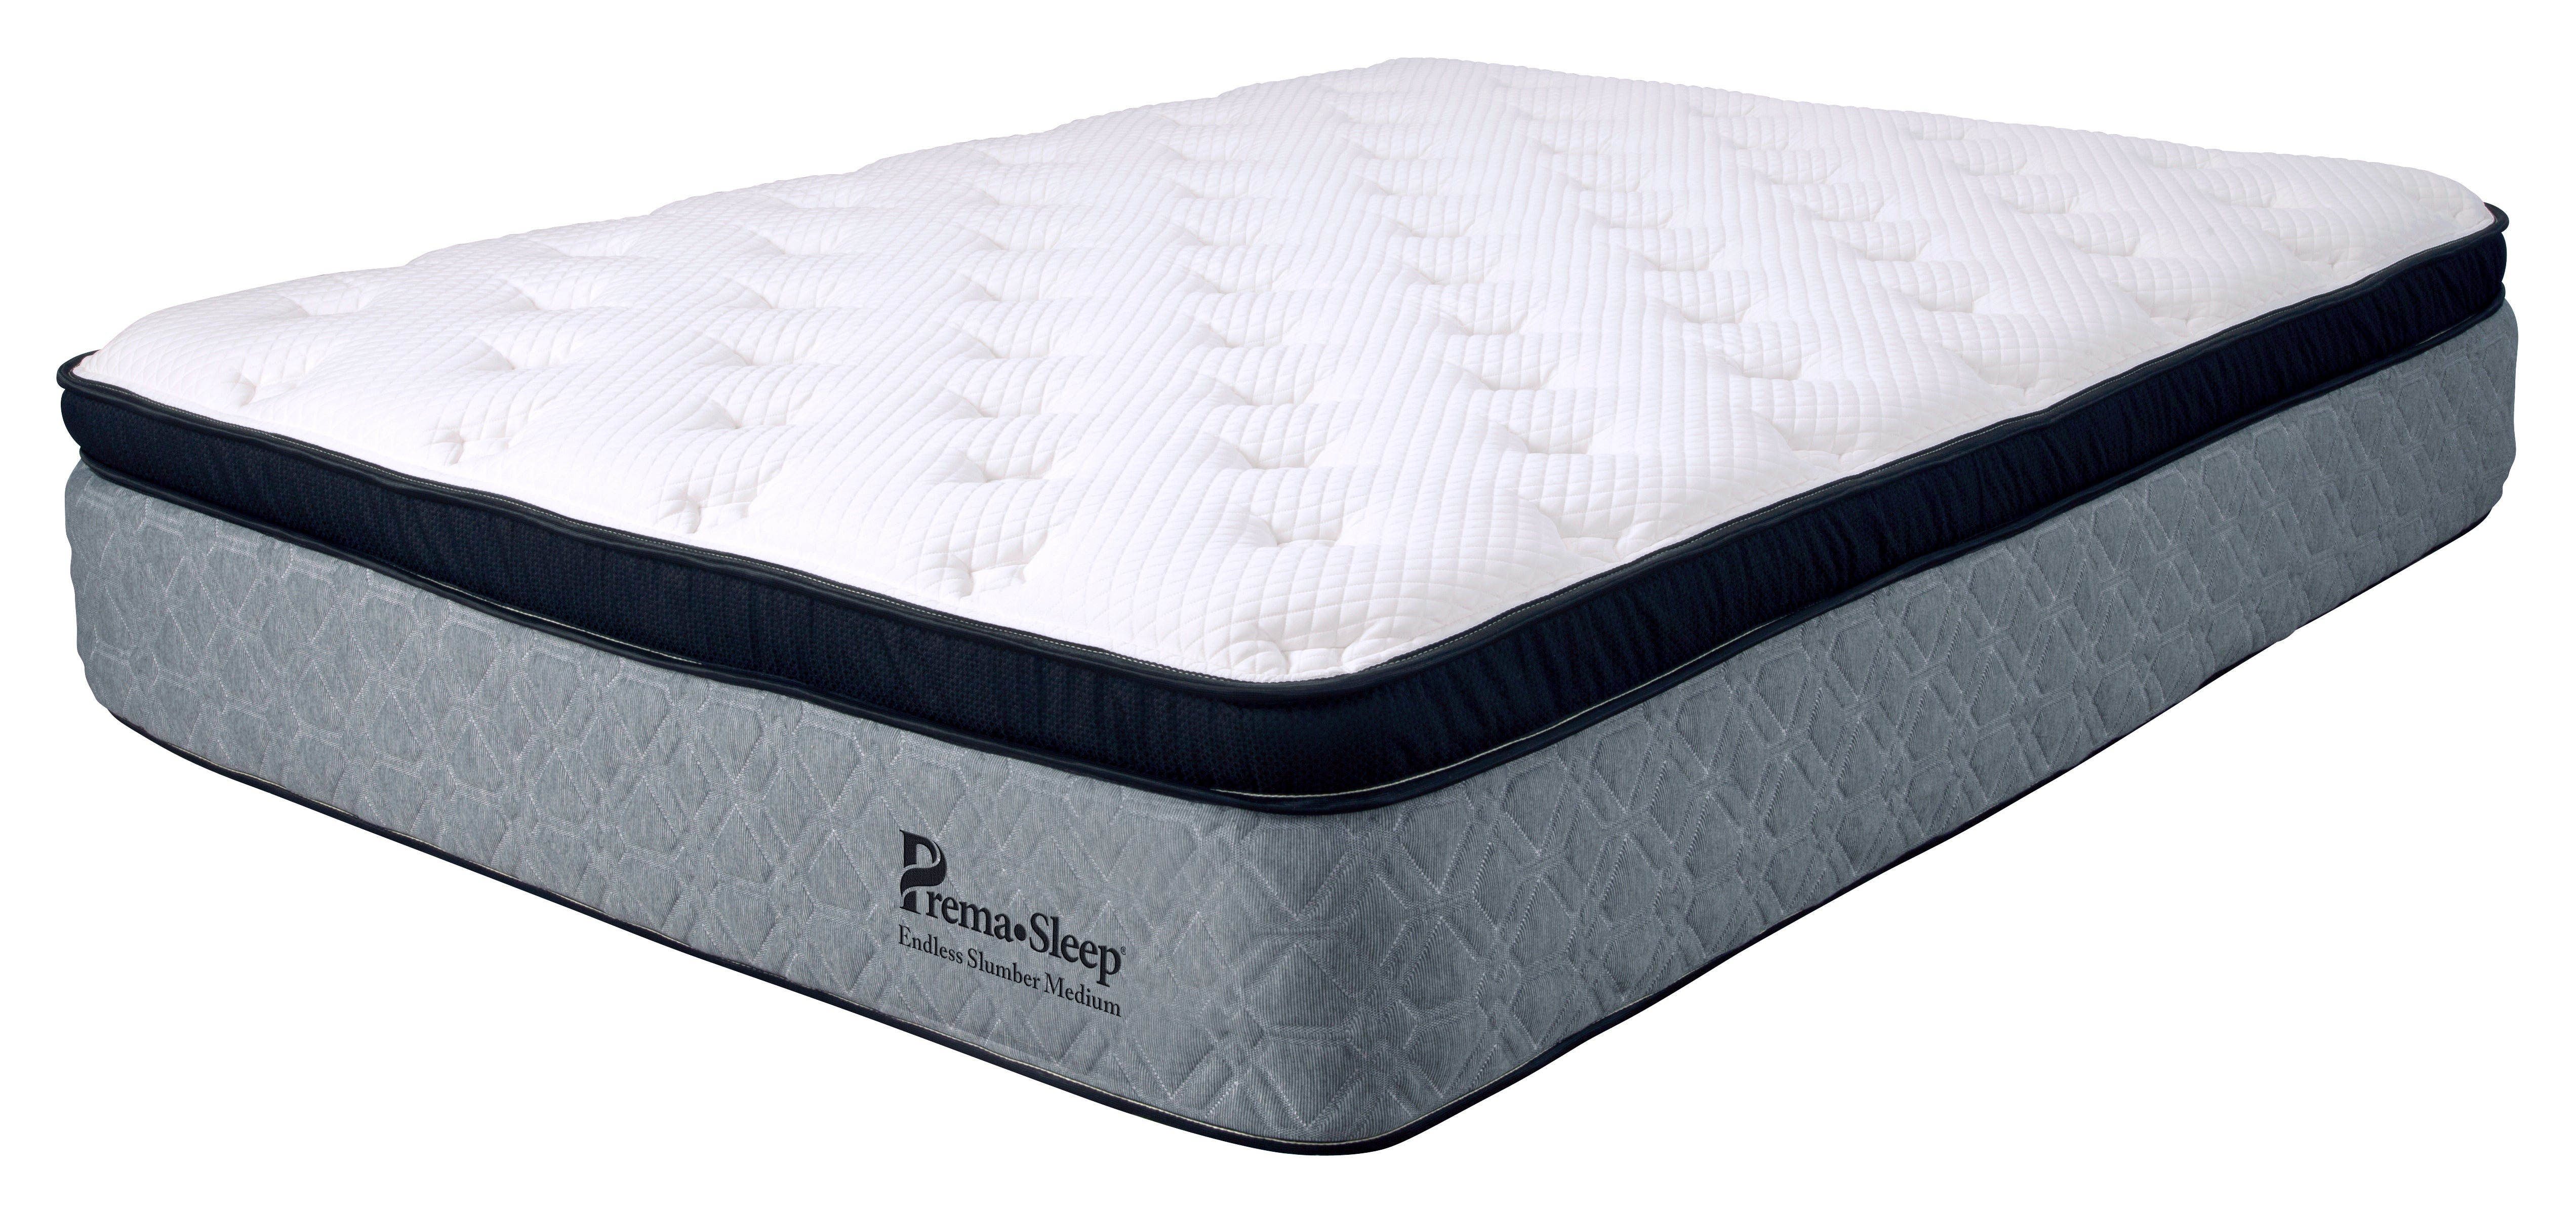 Silo view of PremaSleep Endless Slumber Firm mattress